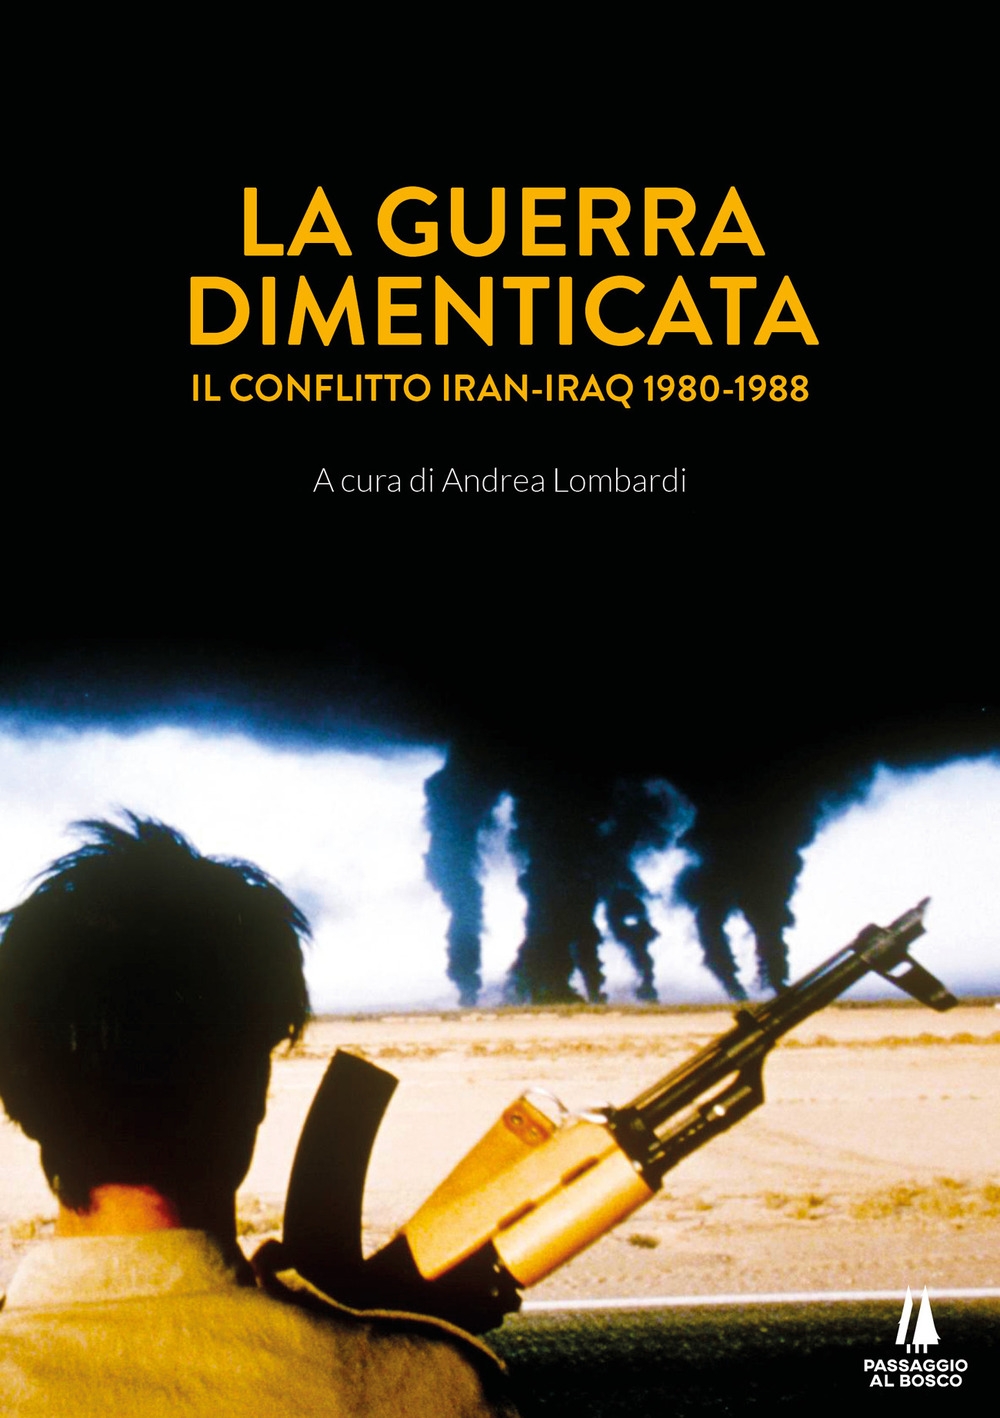 Libri Guerra Dimenticata. Il Conflitto Iran-Iraq (1980-1988) (La) NUOVO SIGILLATO, EDIZIONE DEL 16/11/2020 SUBITO DISPONIBILE